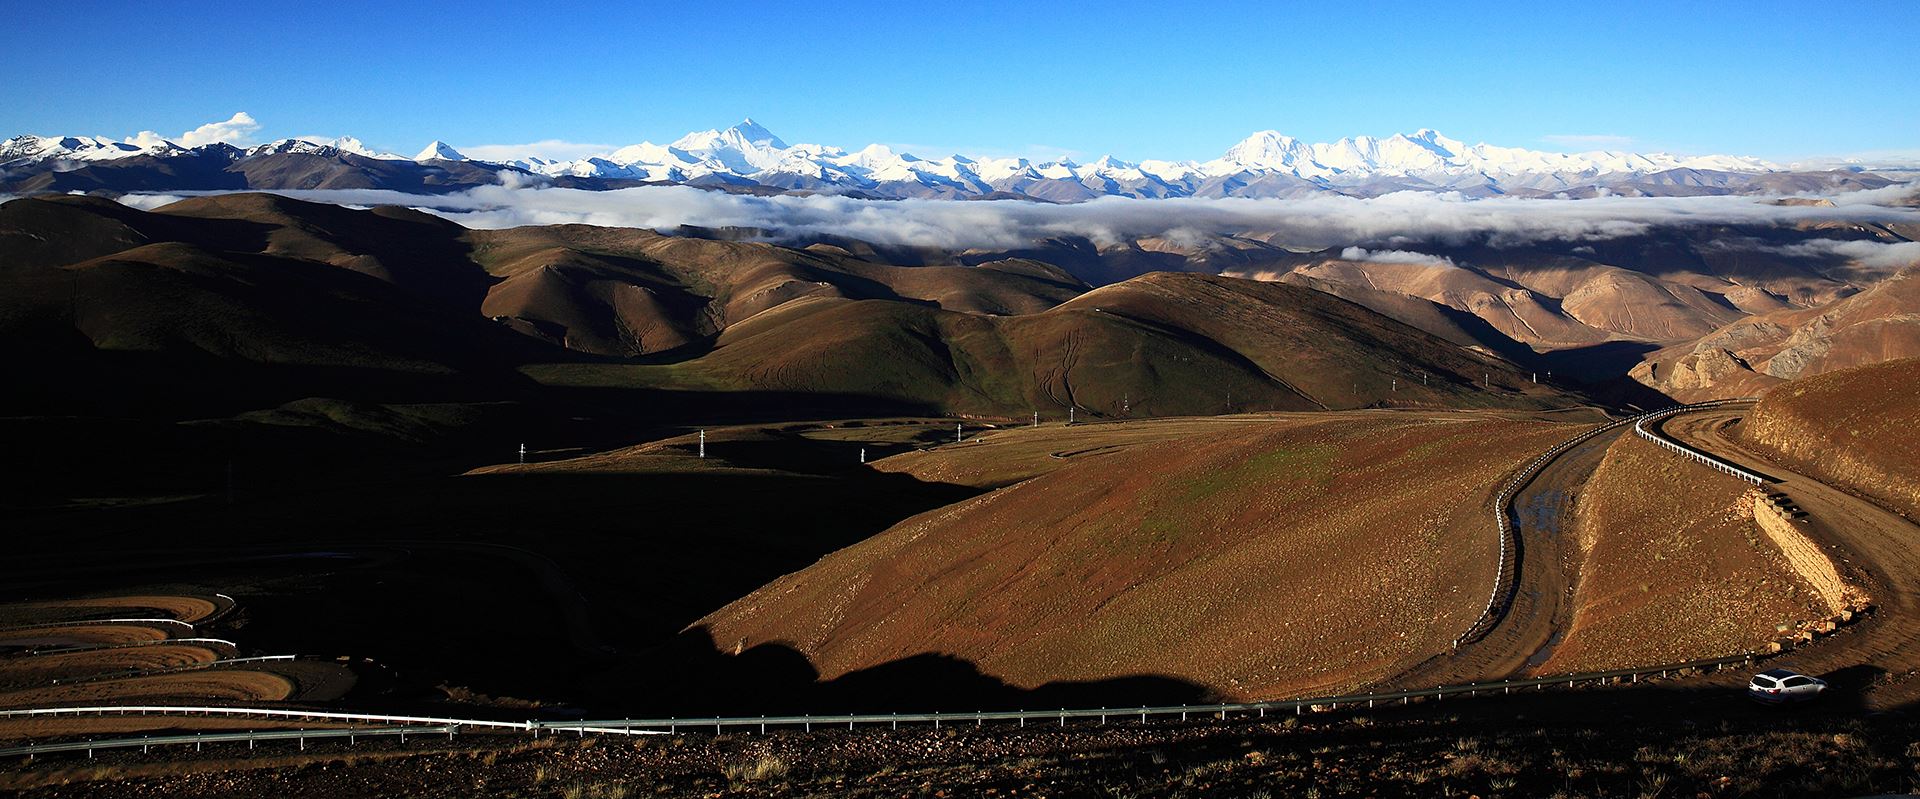 Viaggio via Terra dal Tibet via Everest e Kailash allo Xinjiang